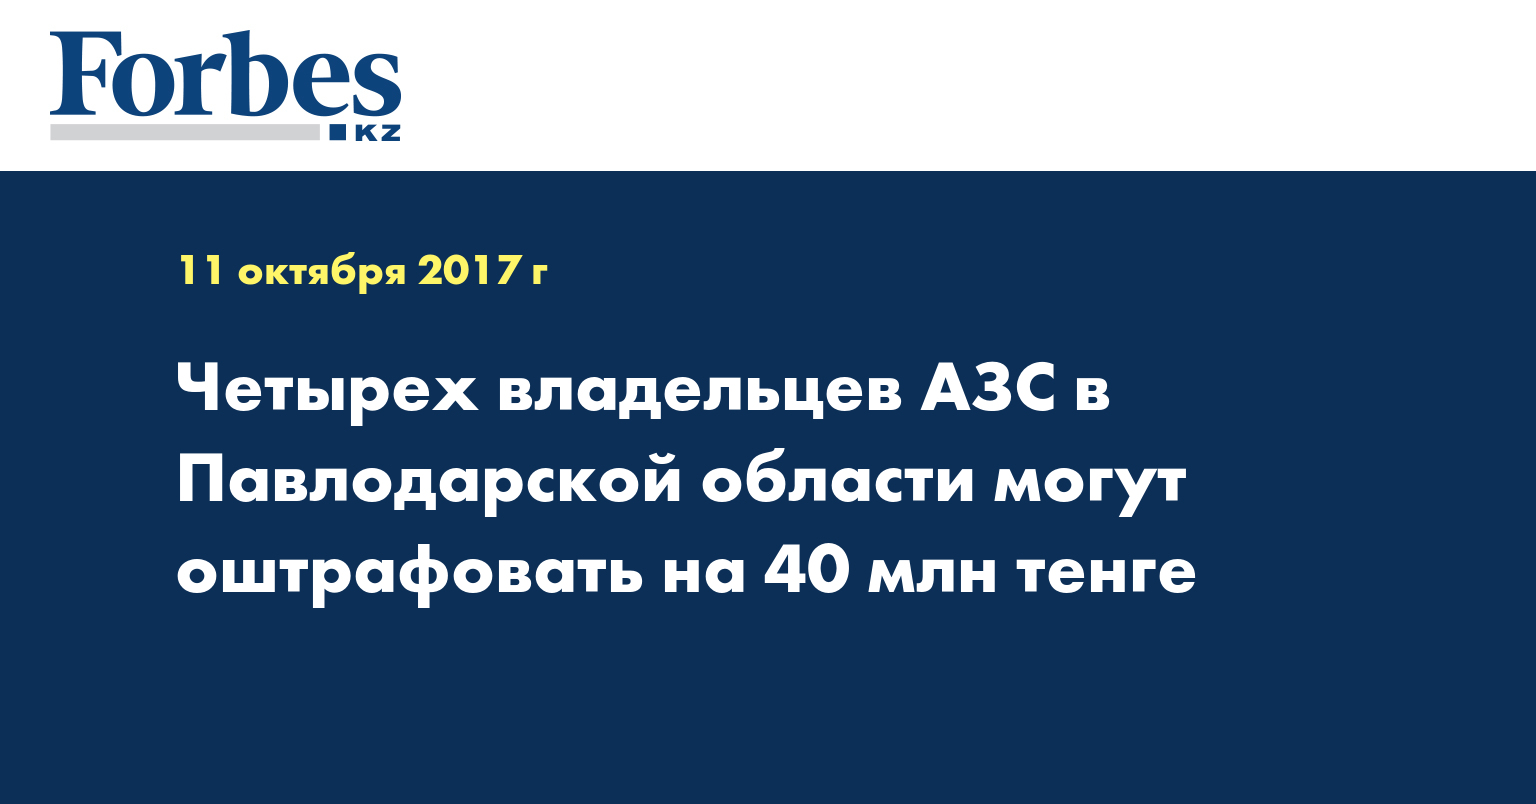 Четырех владельцев АЗС в Павлодарской области могут оштрафовать на 40 млн тенге  